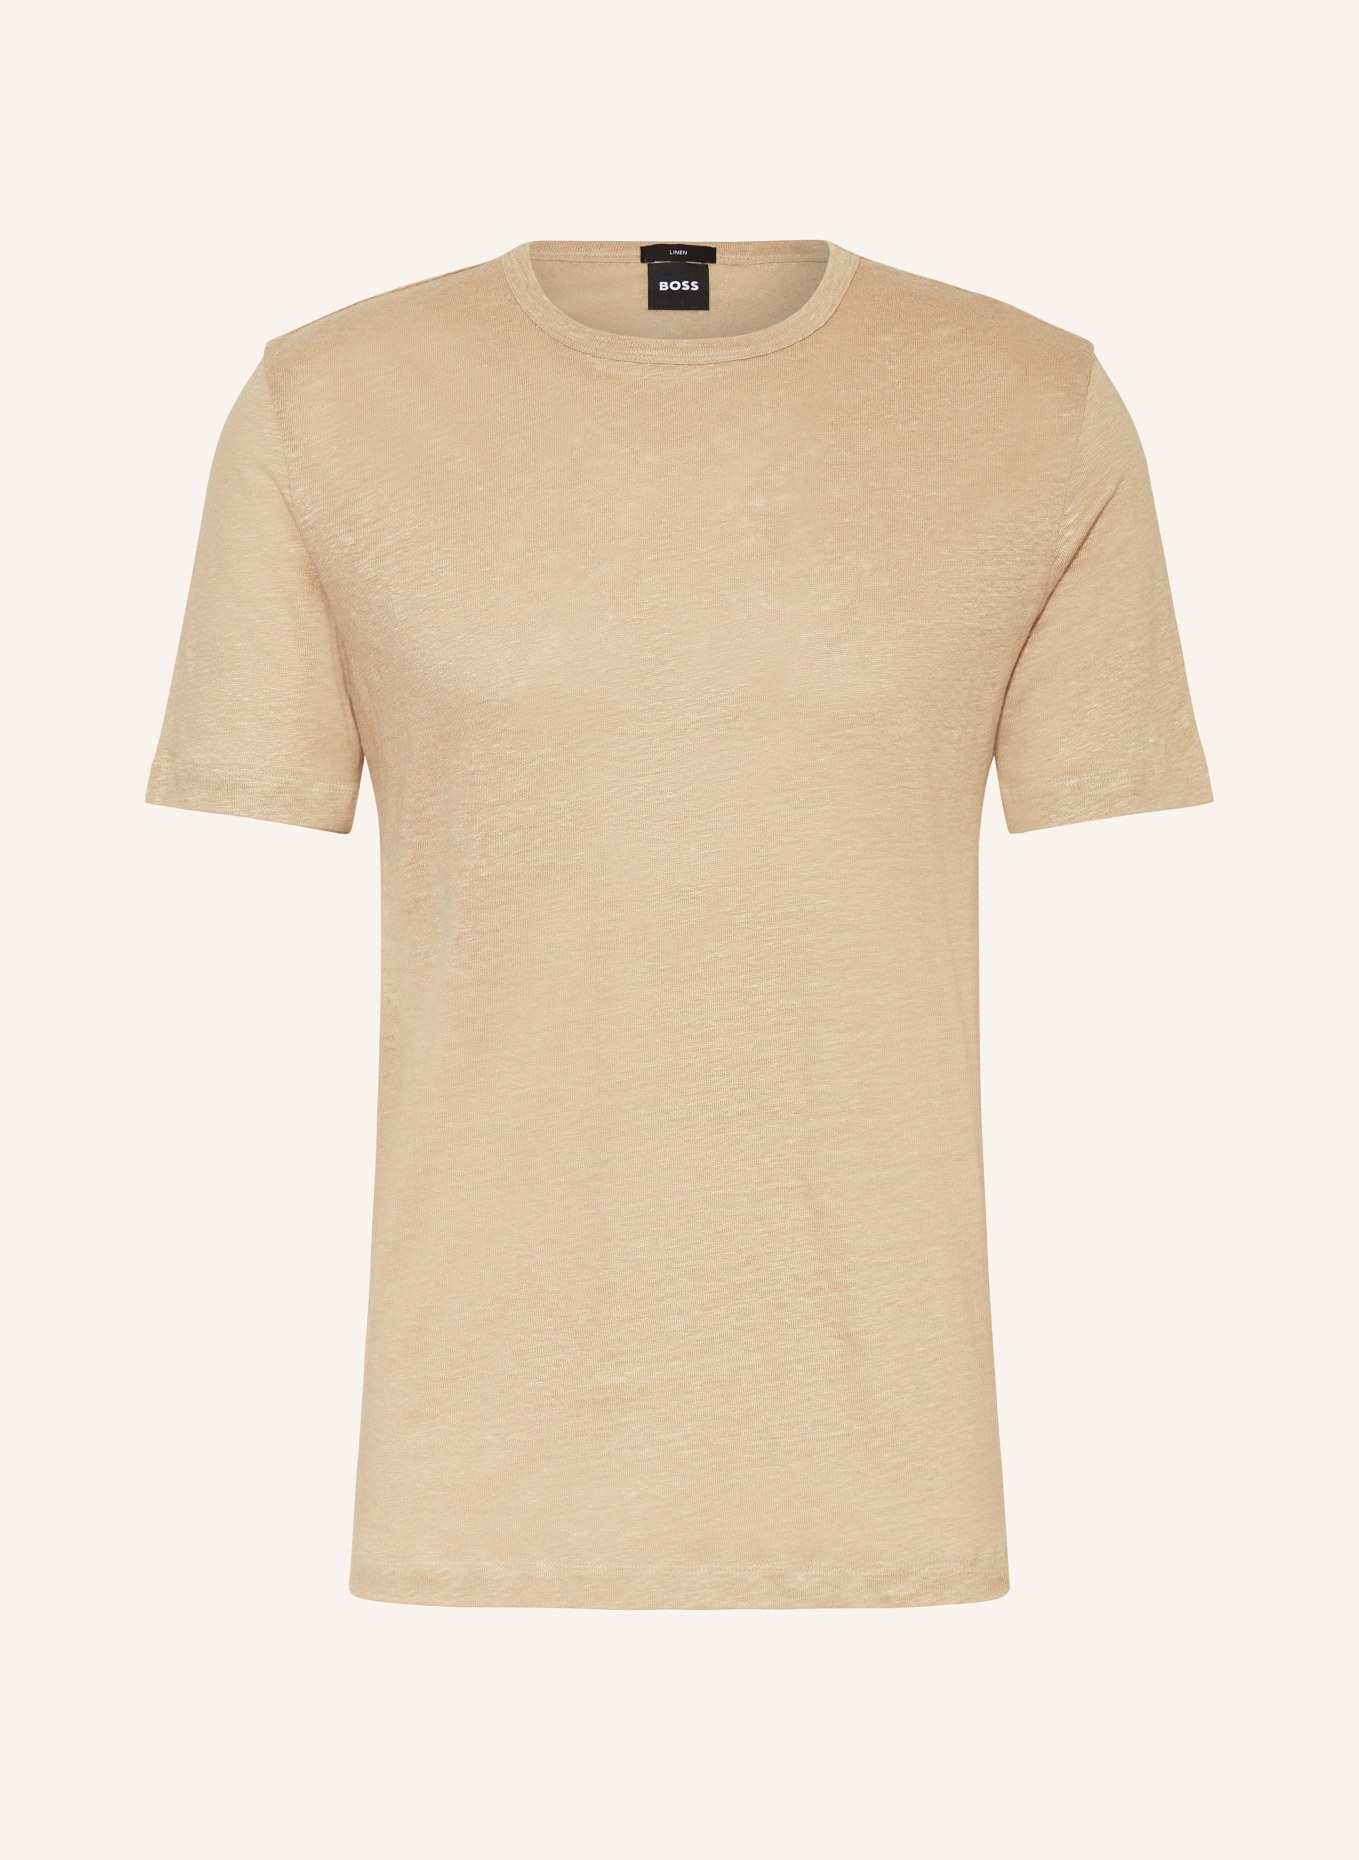 BOSS T-Shirt TIBURT aus Leinen, Farbe: BEIGE (Bild 1)